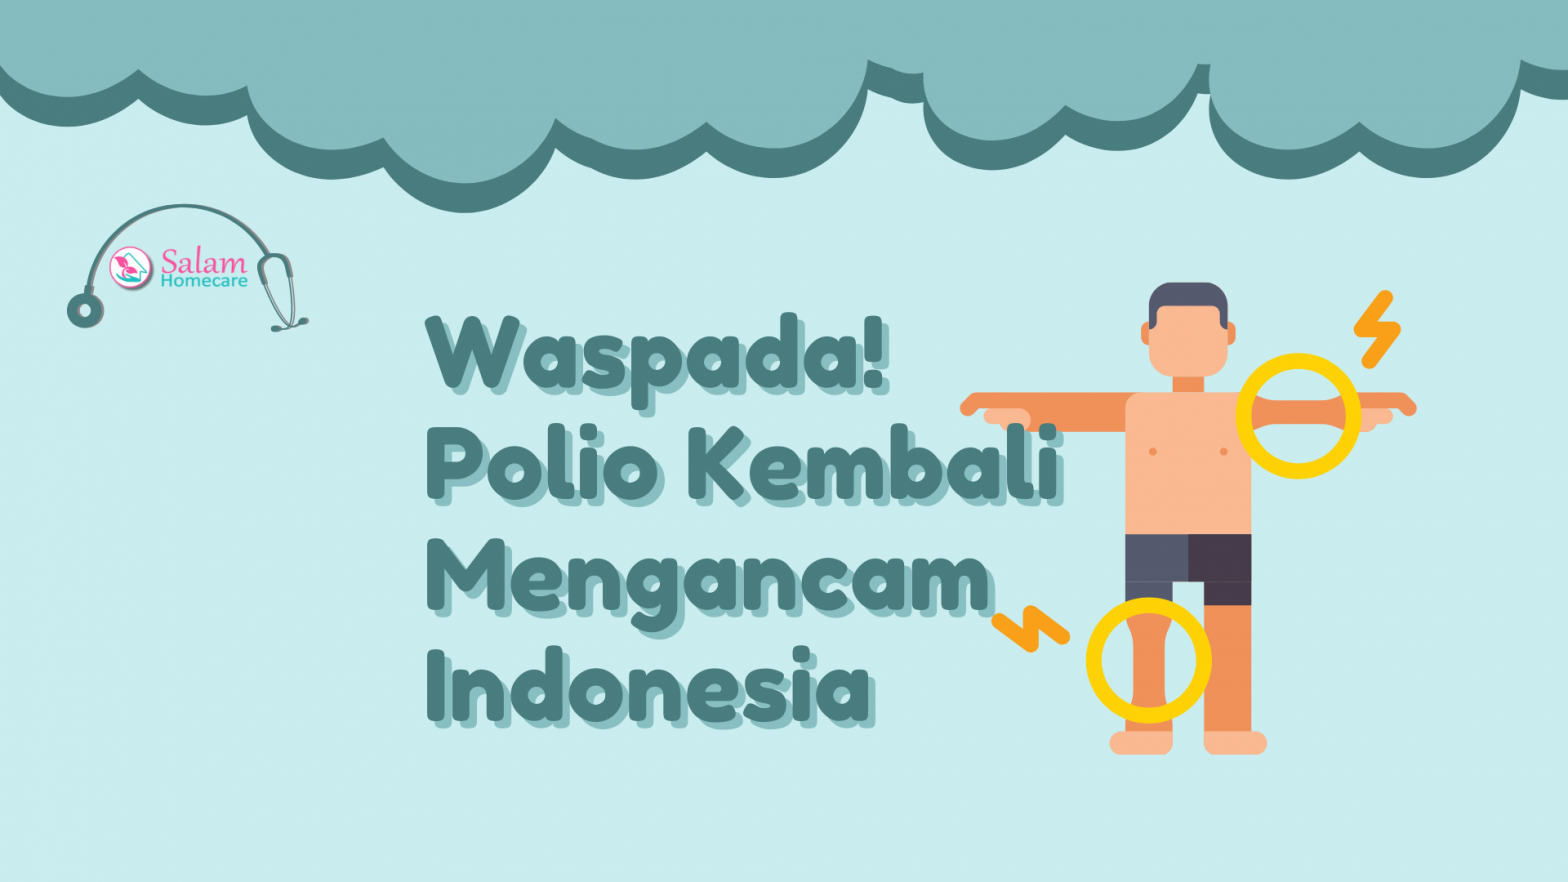 Waspada! Polio Kembali Mengancam Indonesia